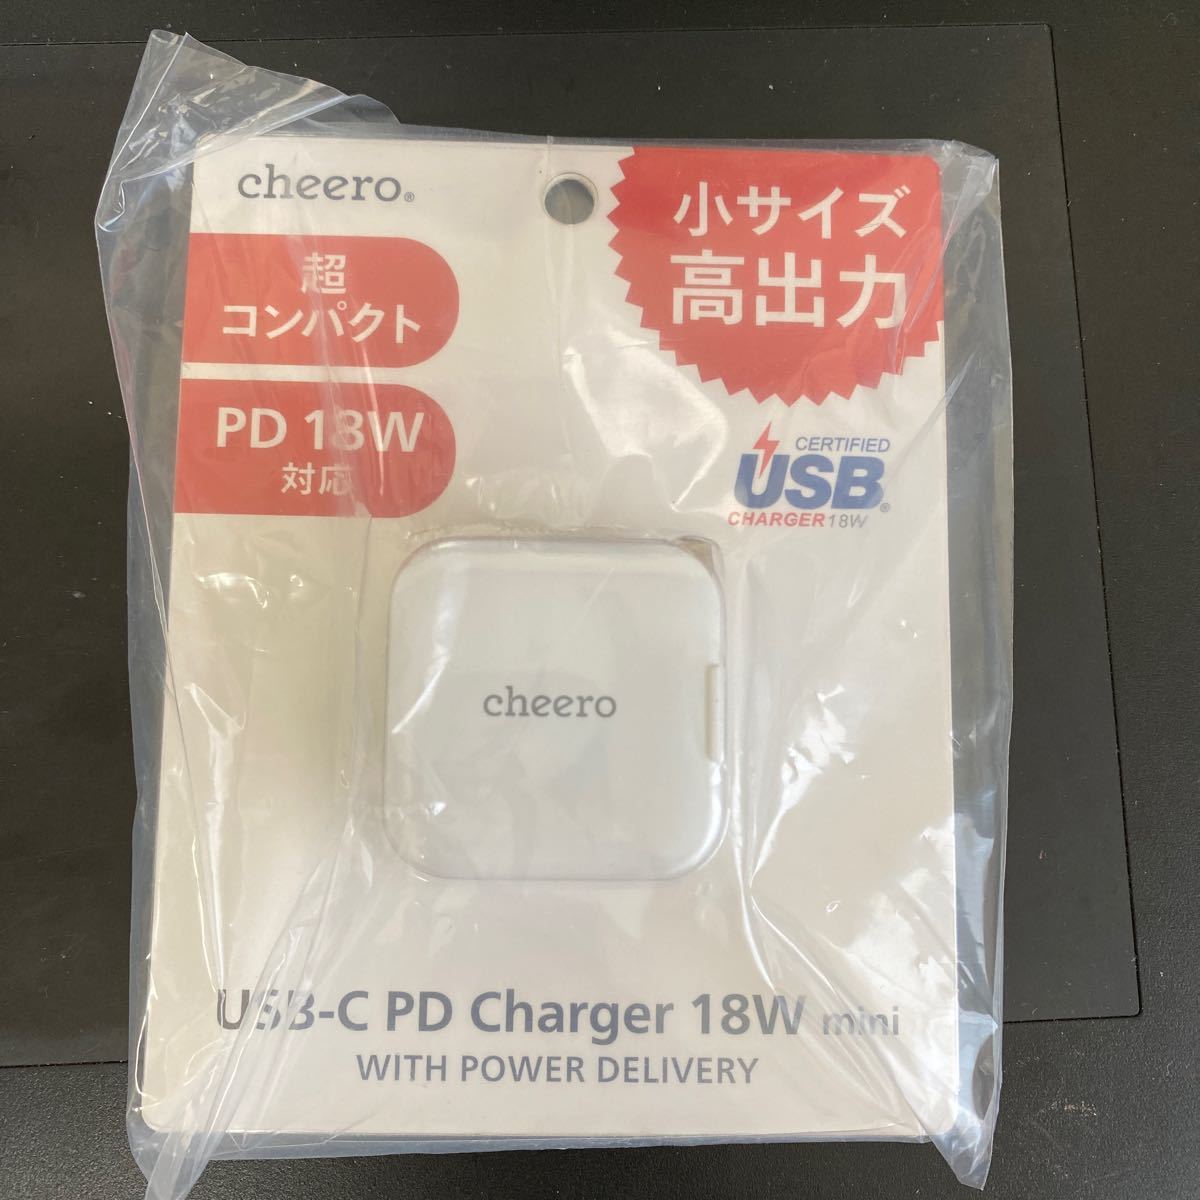 海外買付 cheero USB-C PD Charger 18W mini CHE-329 （ホワイト 